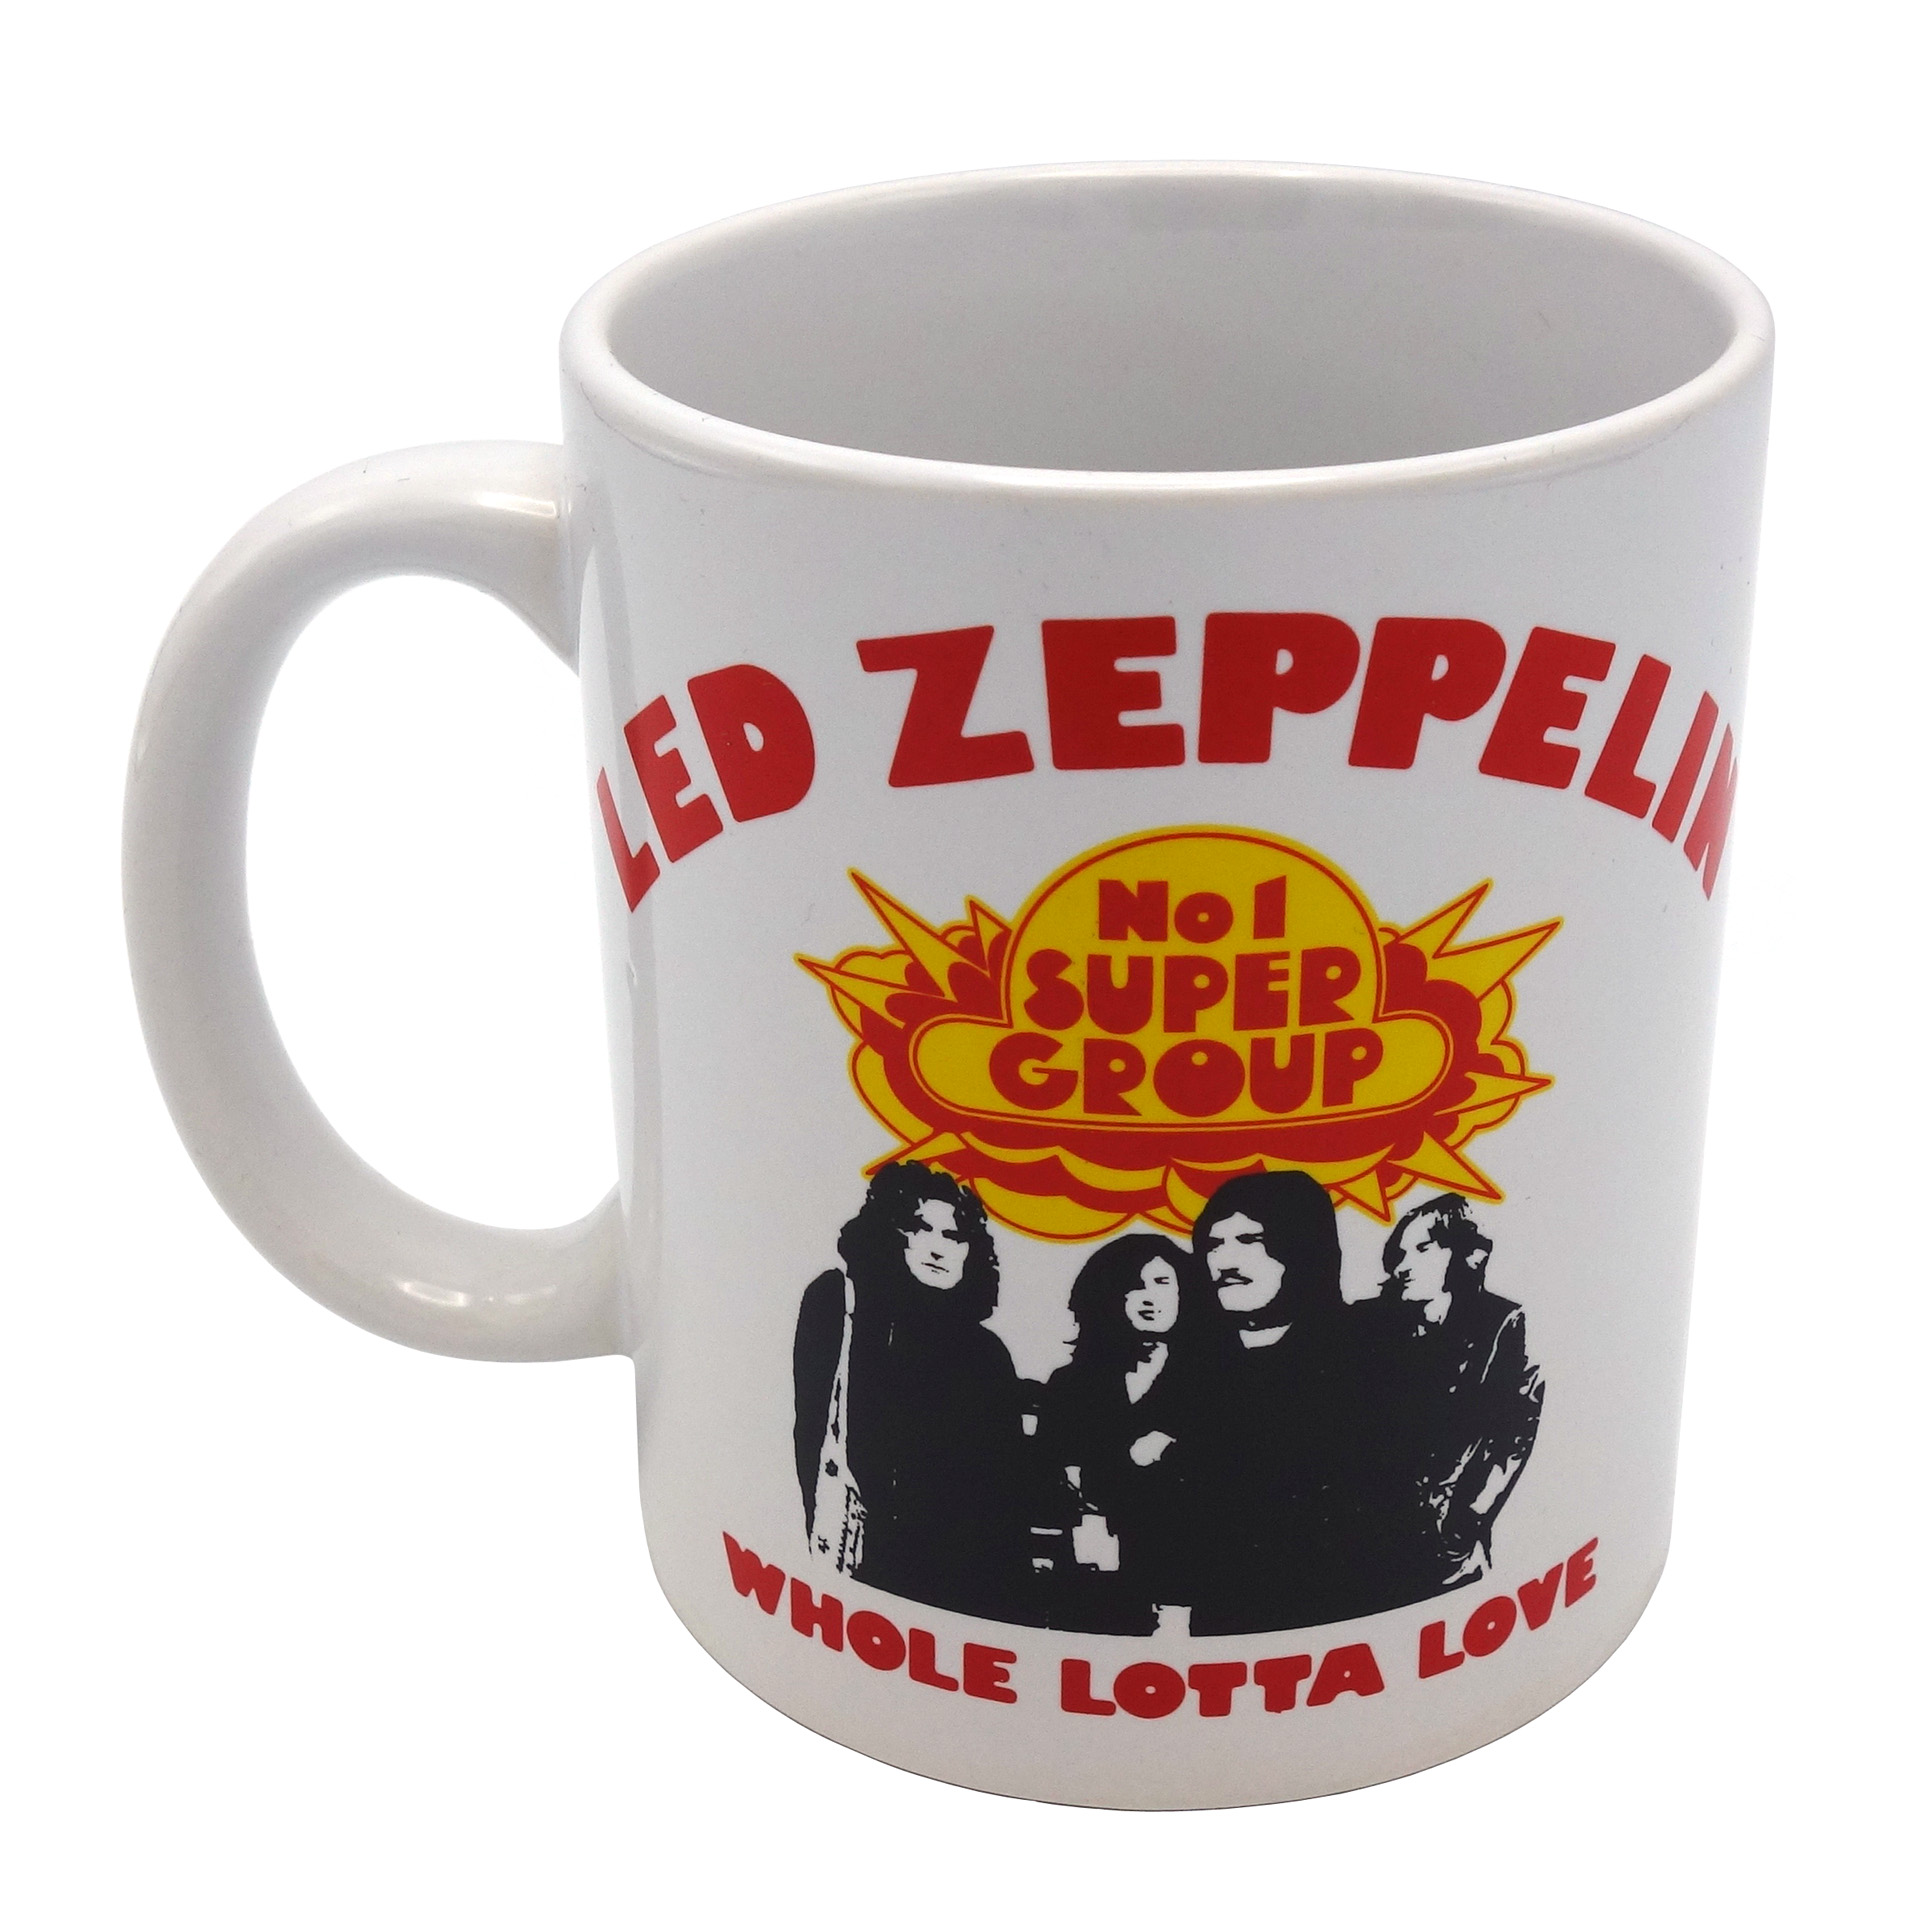 Tasse Led Zeppelin Becher Whole Lotta Love